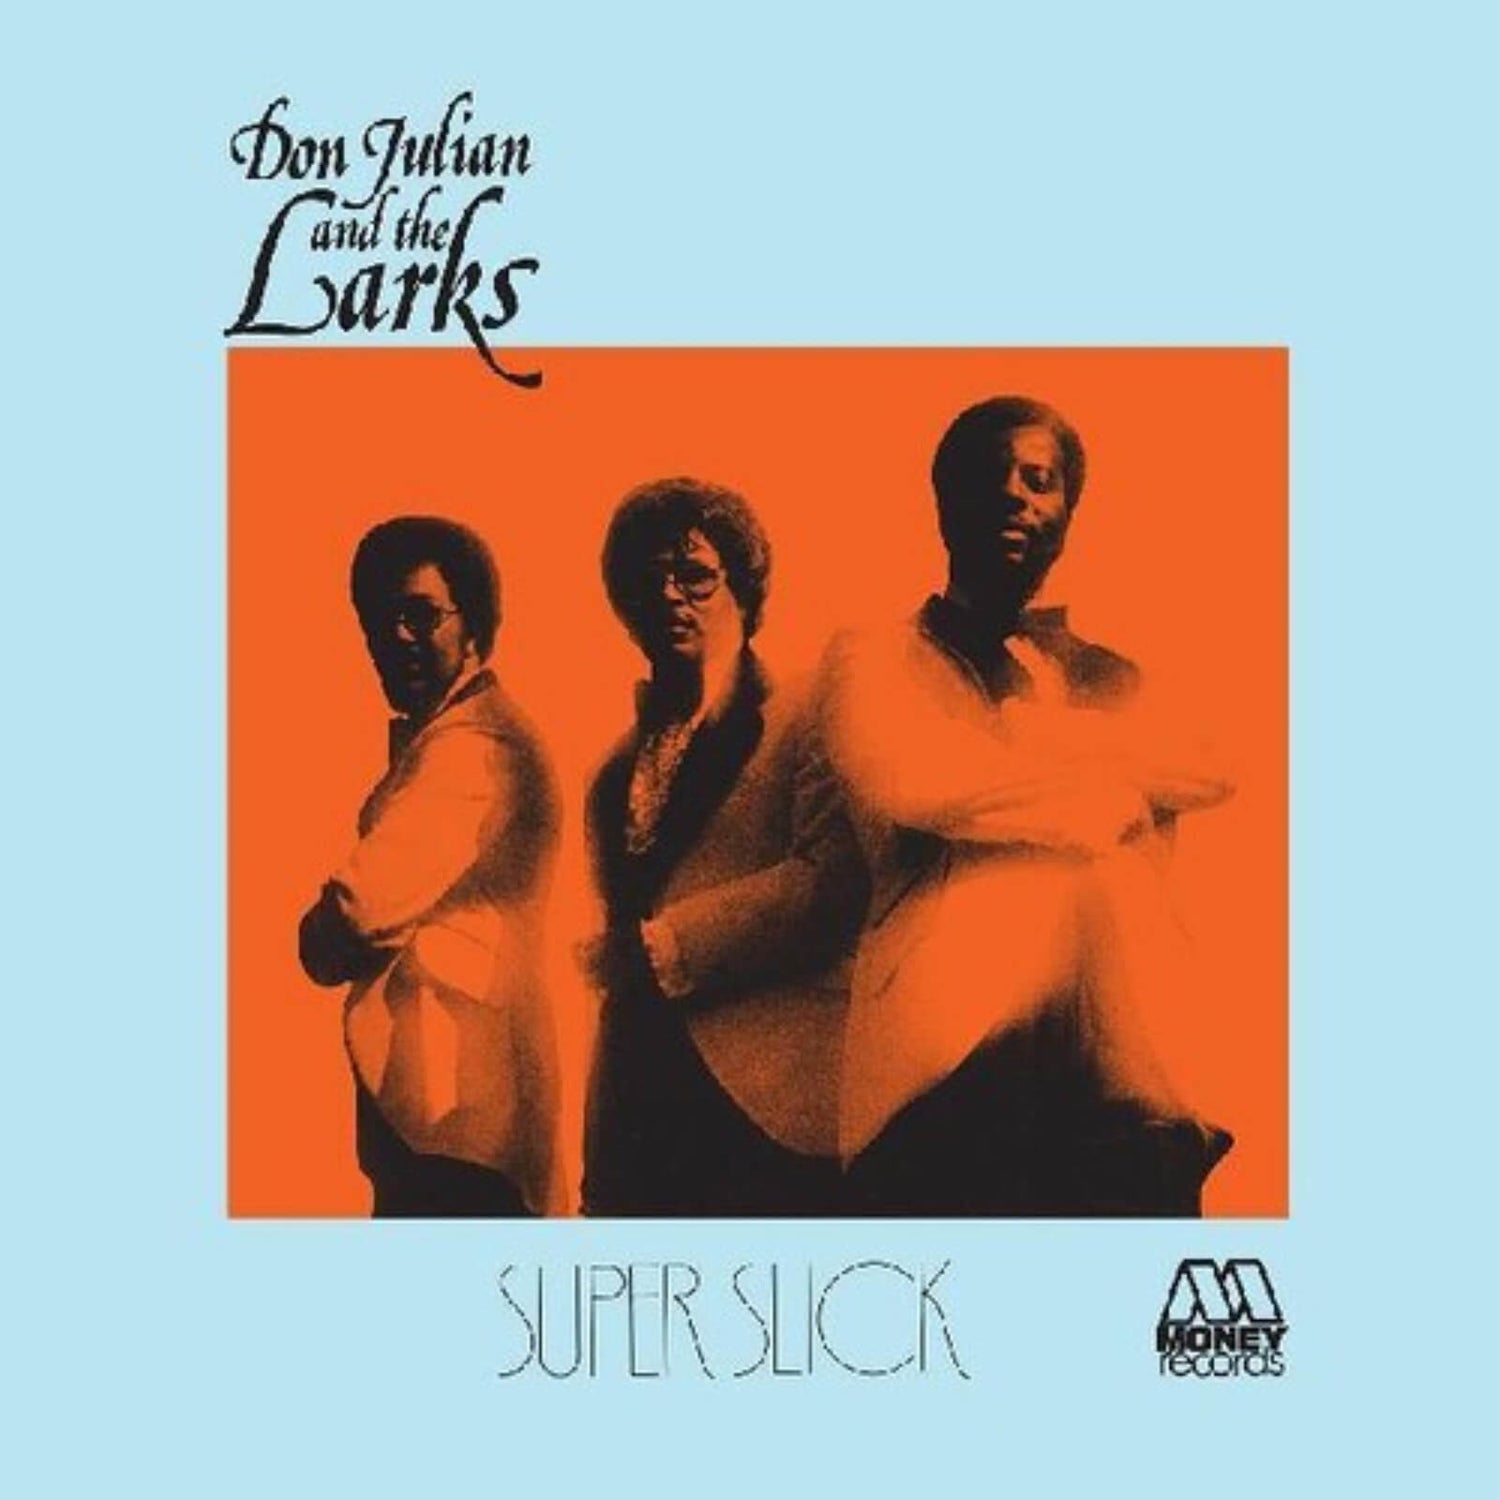 Don Julian & The Larks - Super Slick Vinyl (Blue)